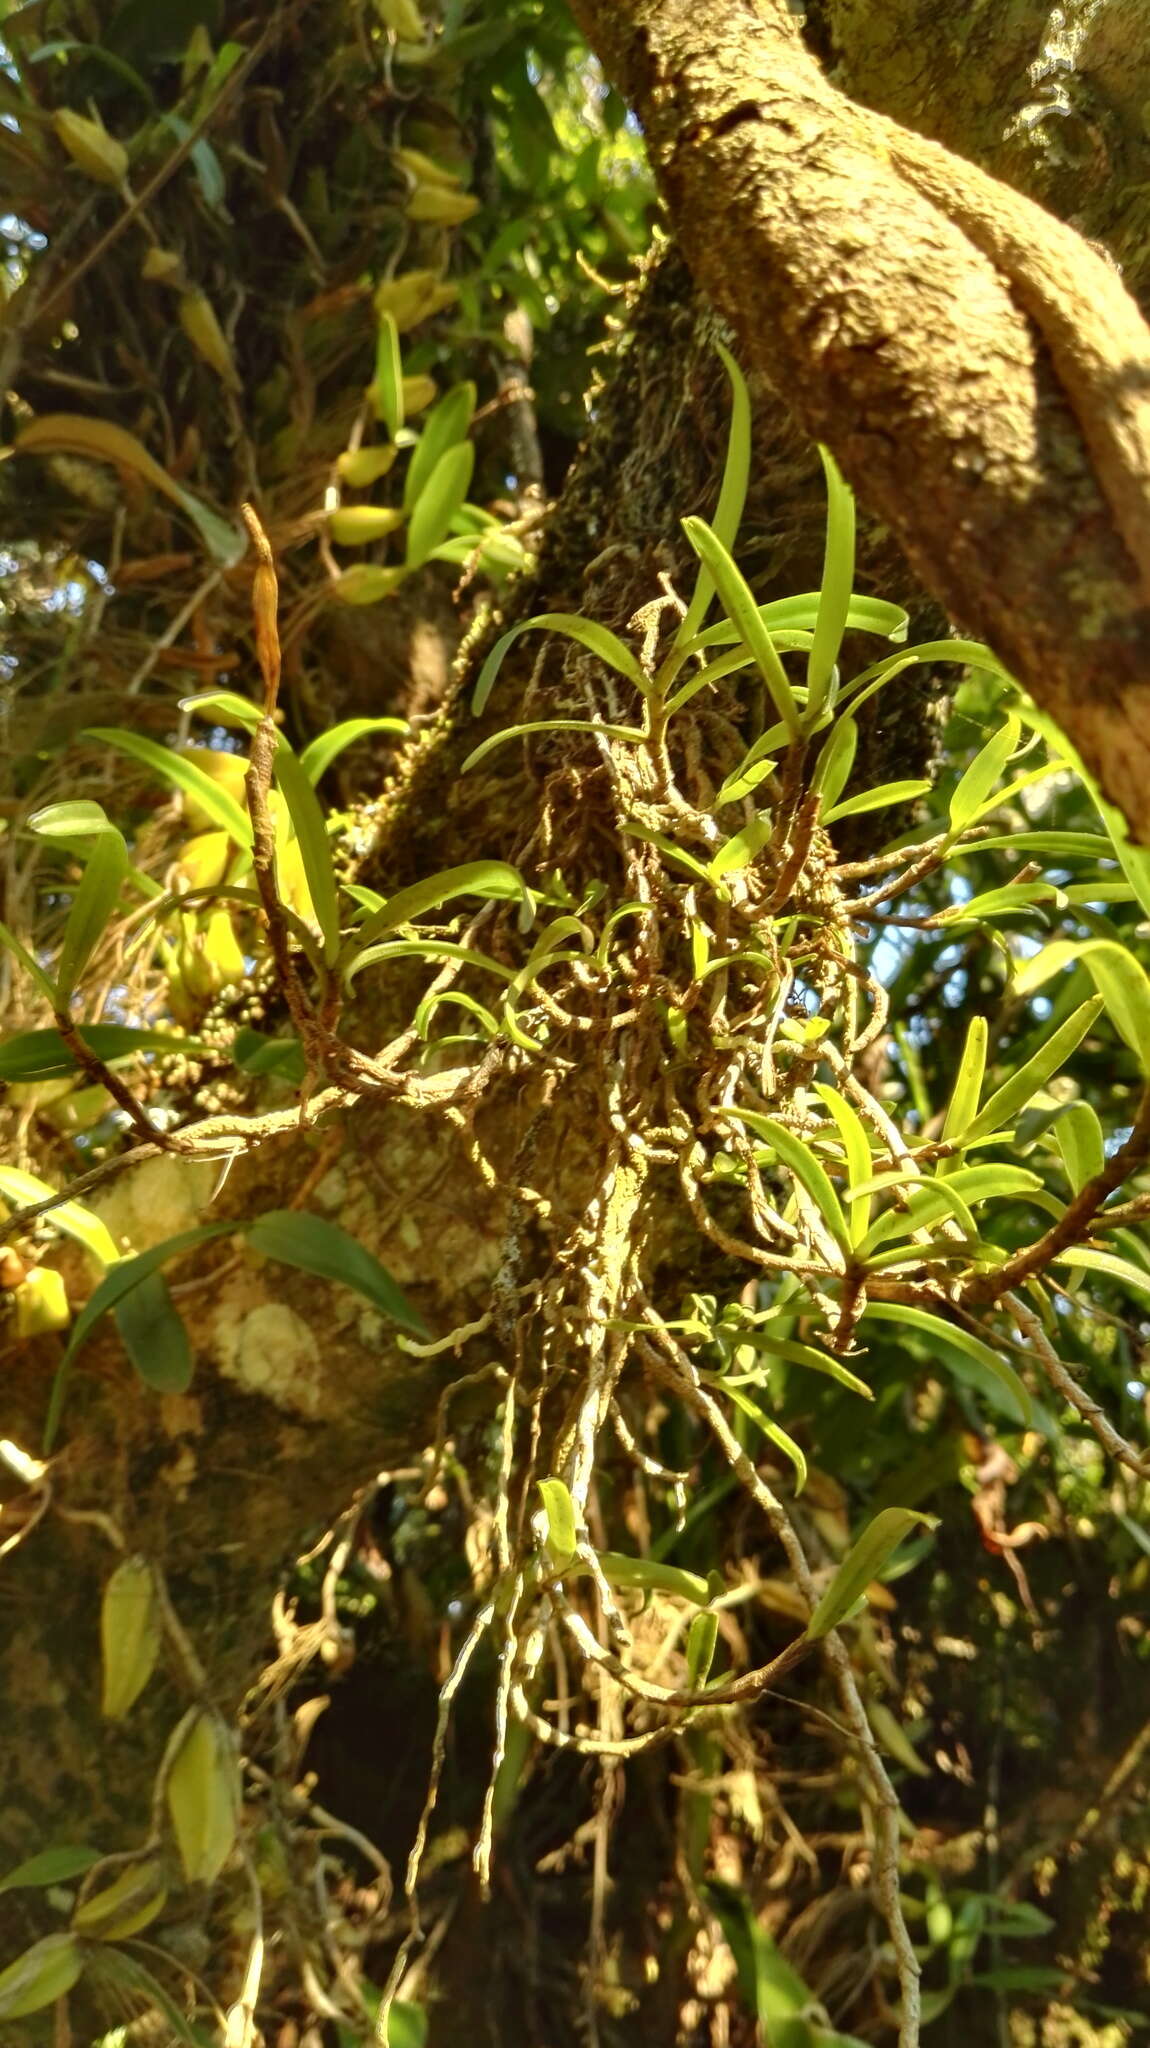 Image of Angraecum conchiferum Lindl.